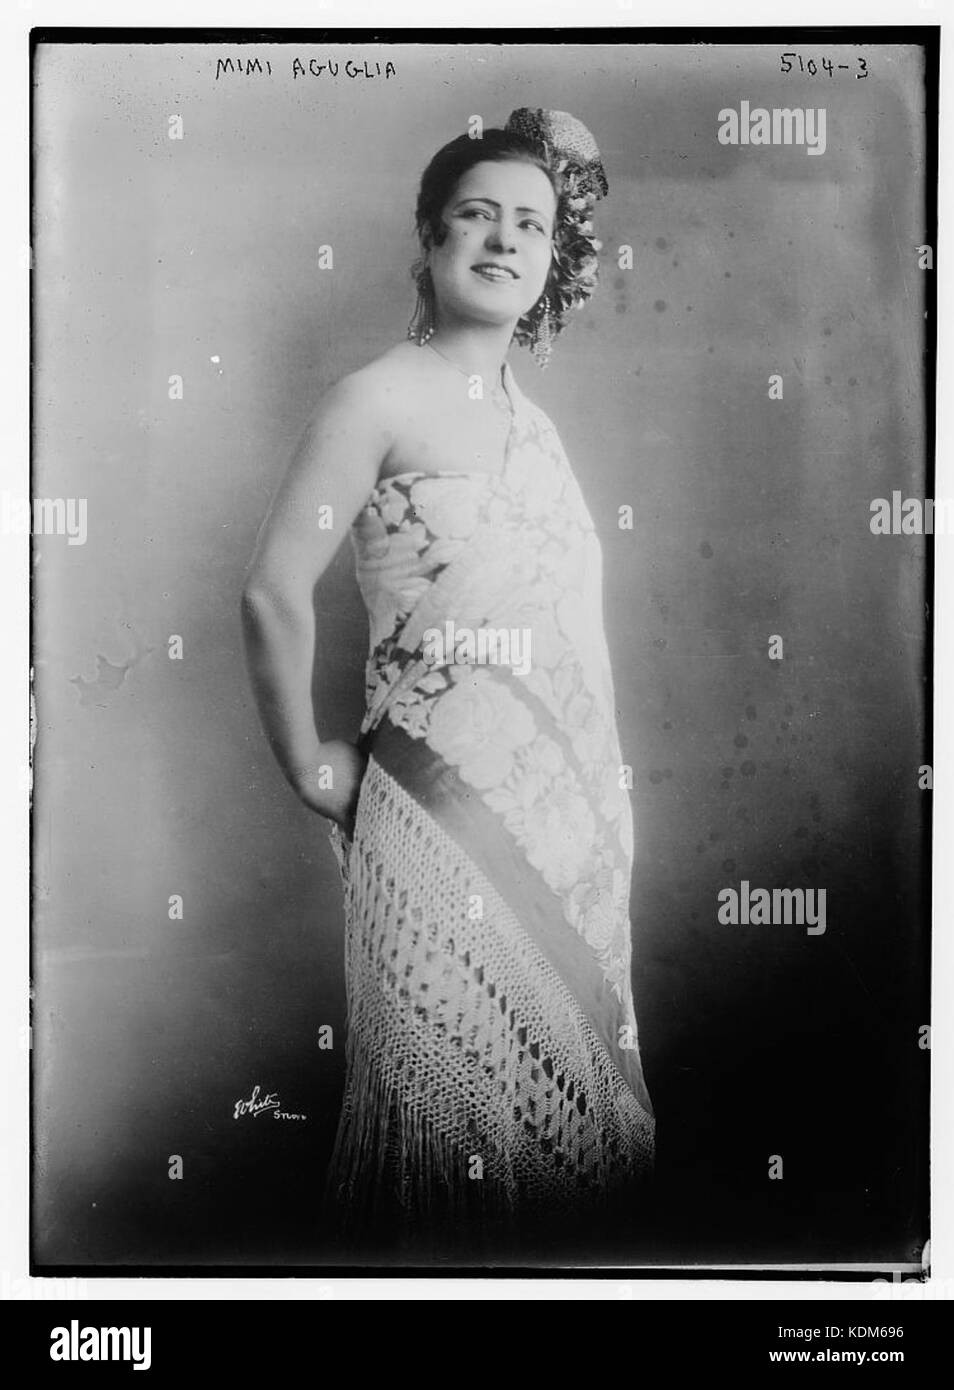 Mimi Aguglia in 1920 Stock Photo